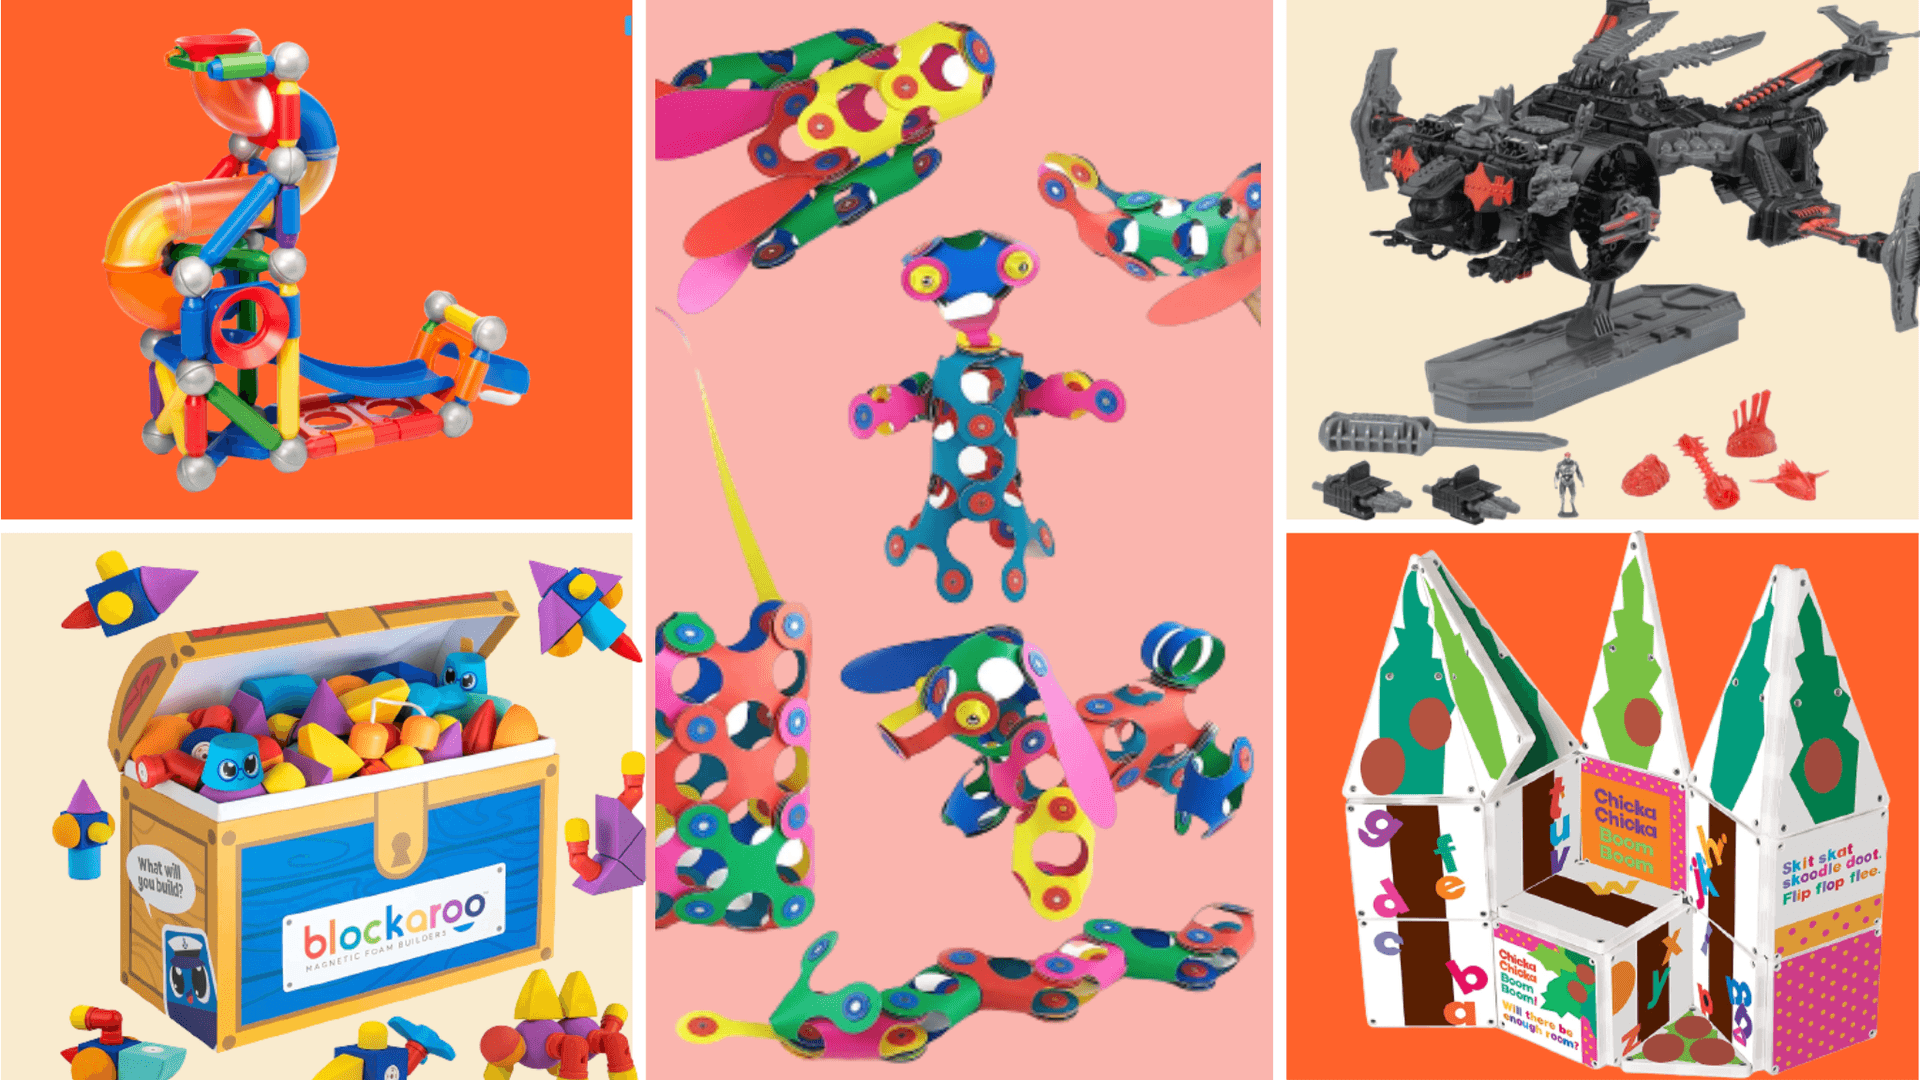 Einecollage Aus Verschiedenen Spielzeugen Und Spielsachen Für Kinder.